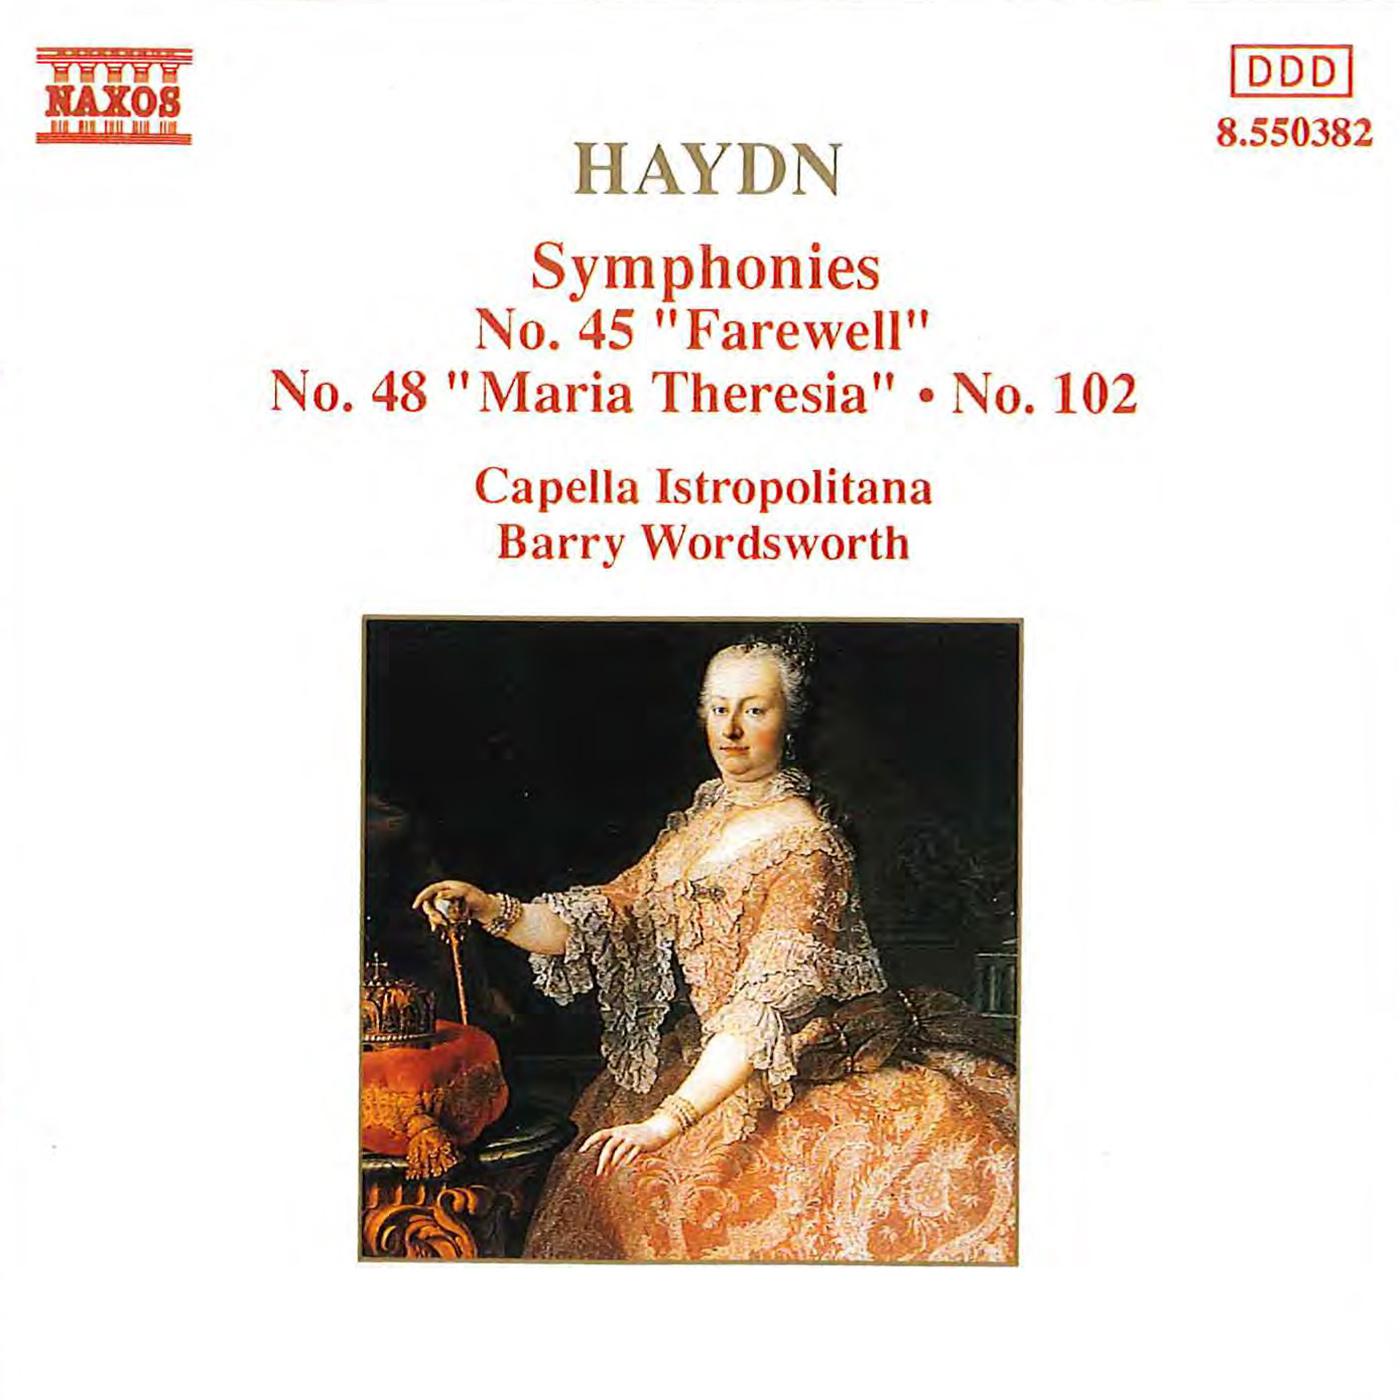 Symphony No. 48 in C Major, Hob.I:48, "Maria Theresa":I. Allegro